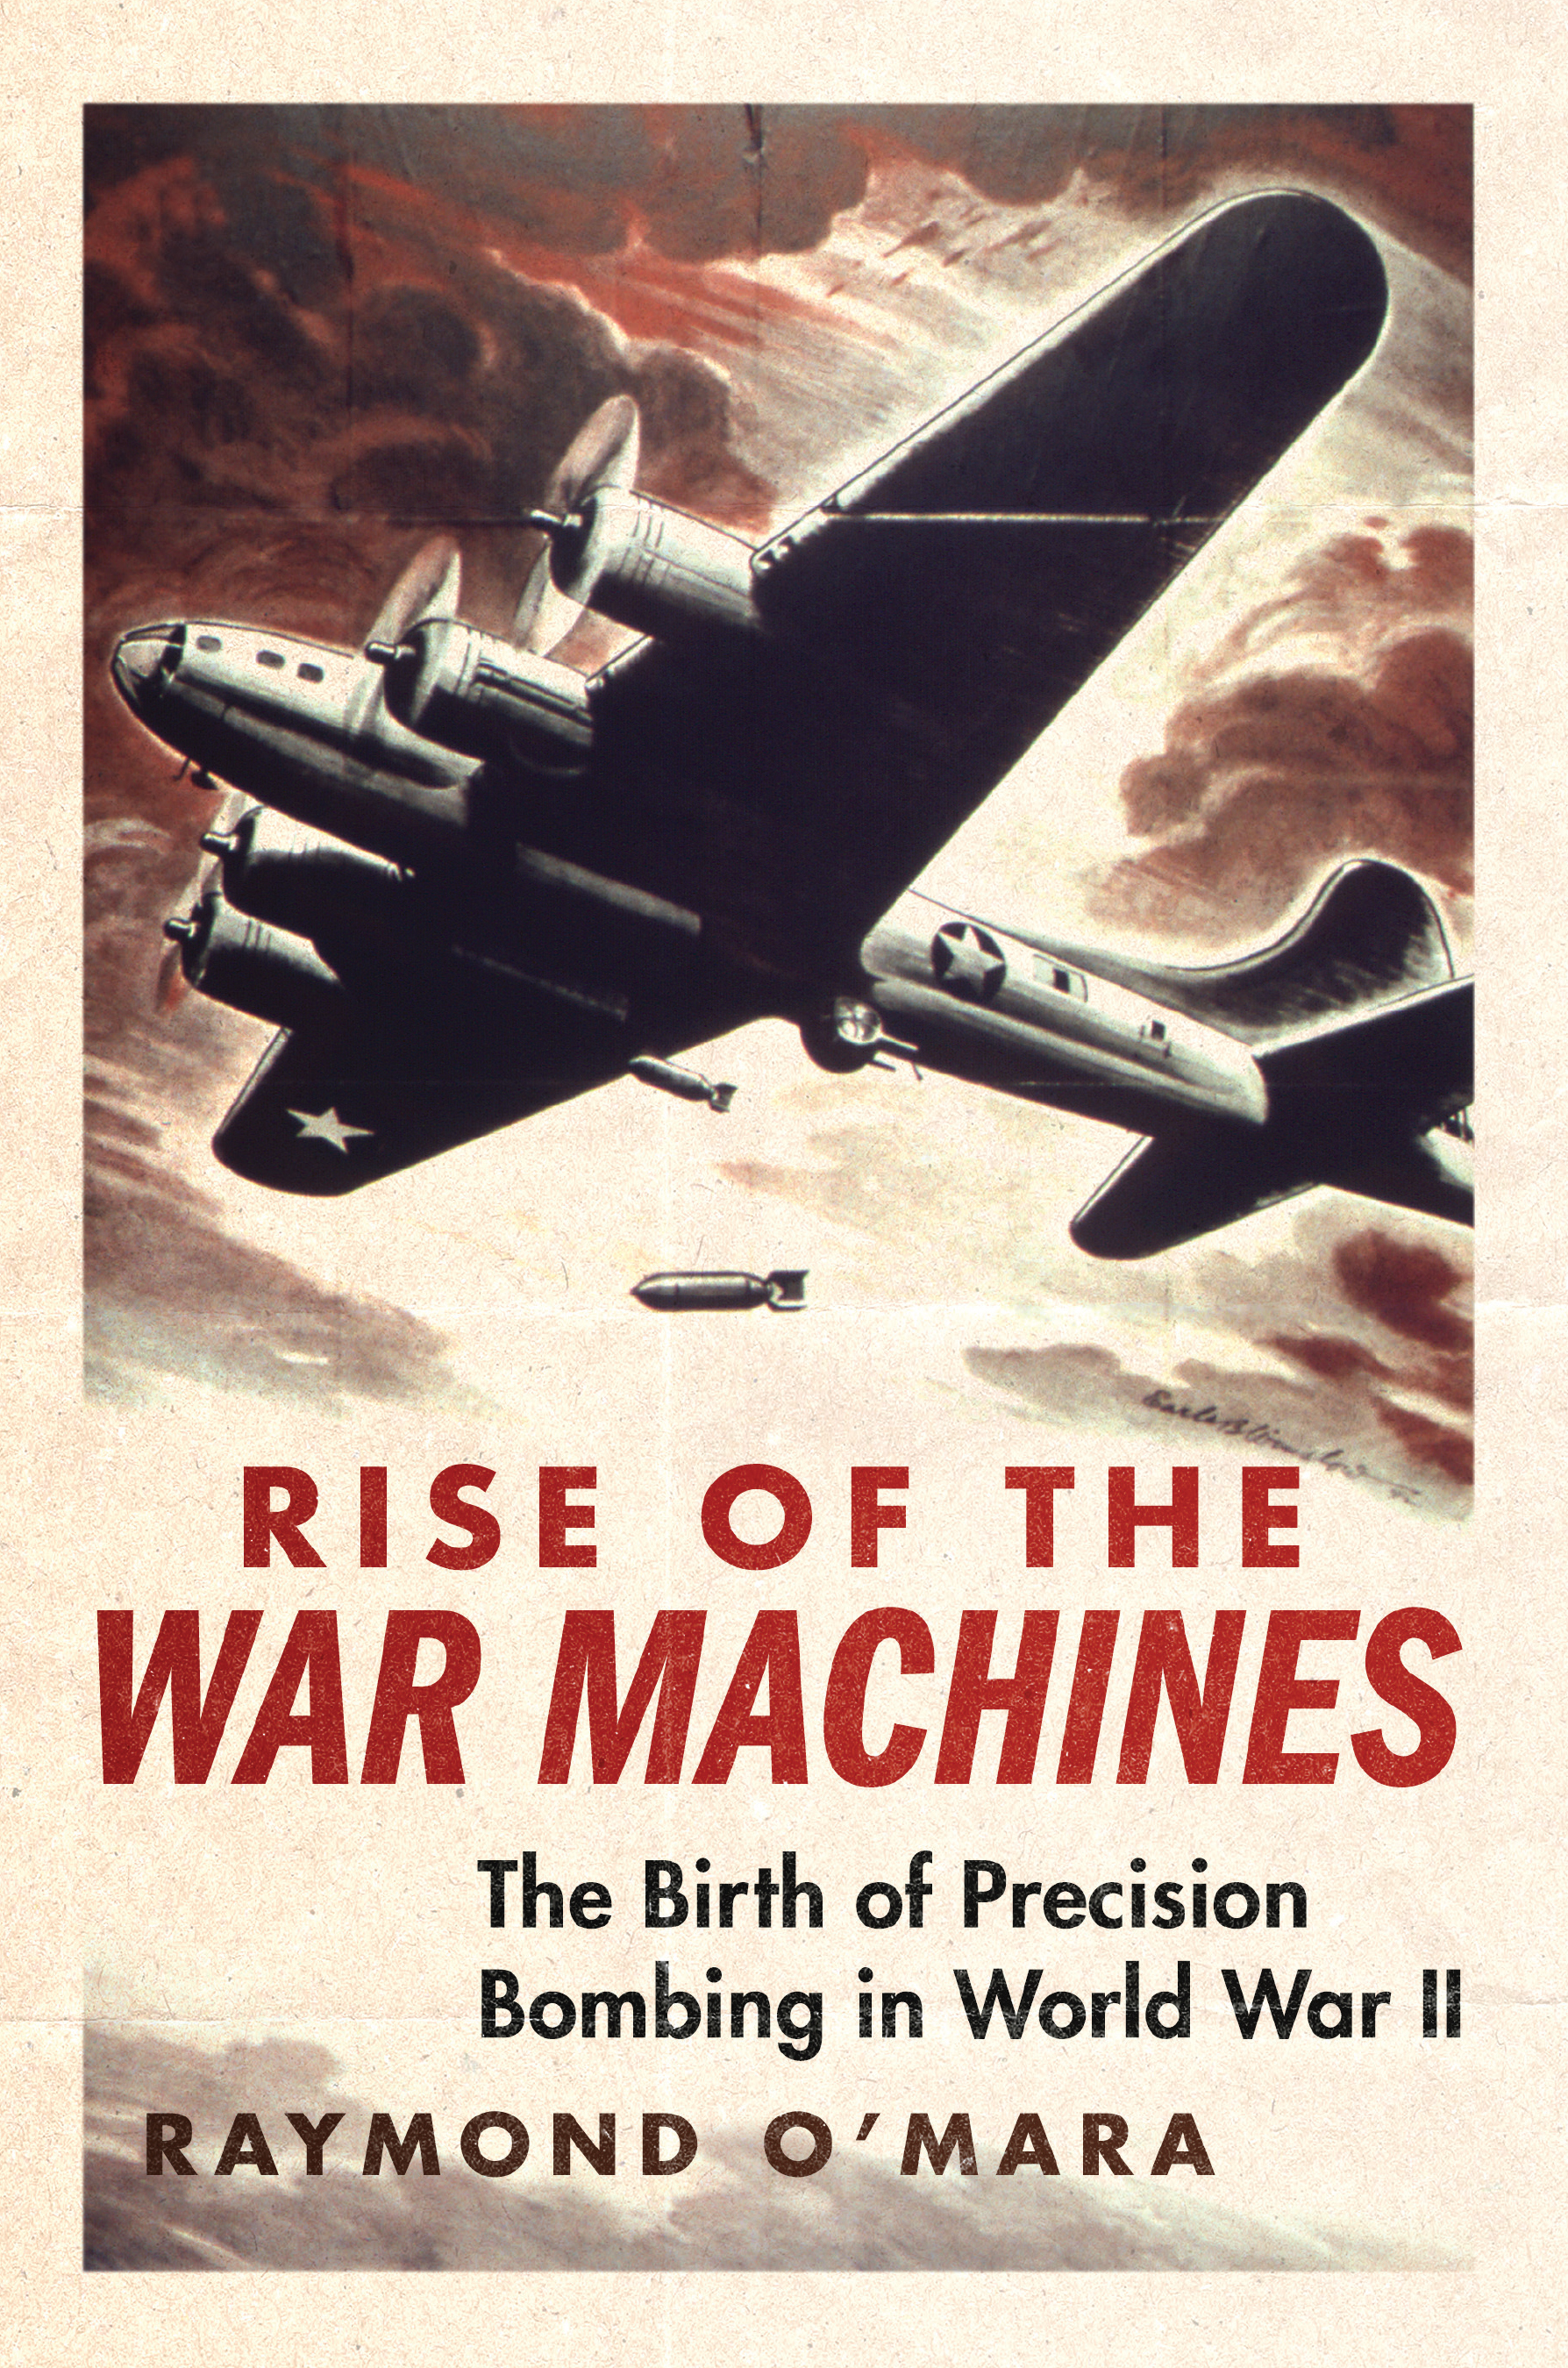 WORLD WAR MACHINES